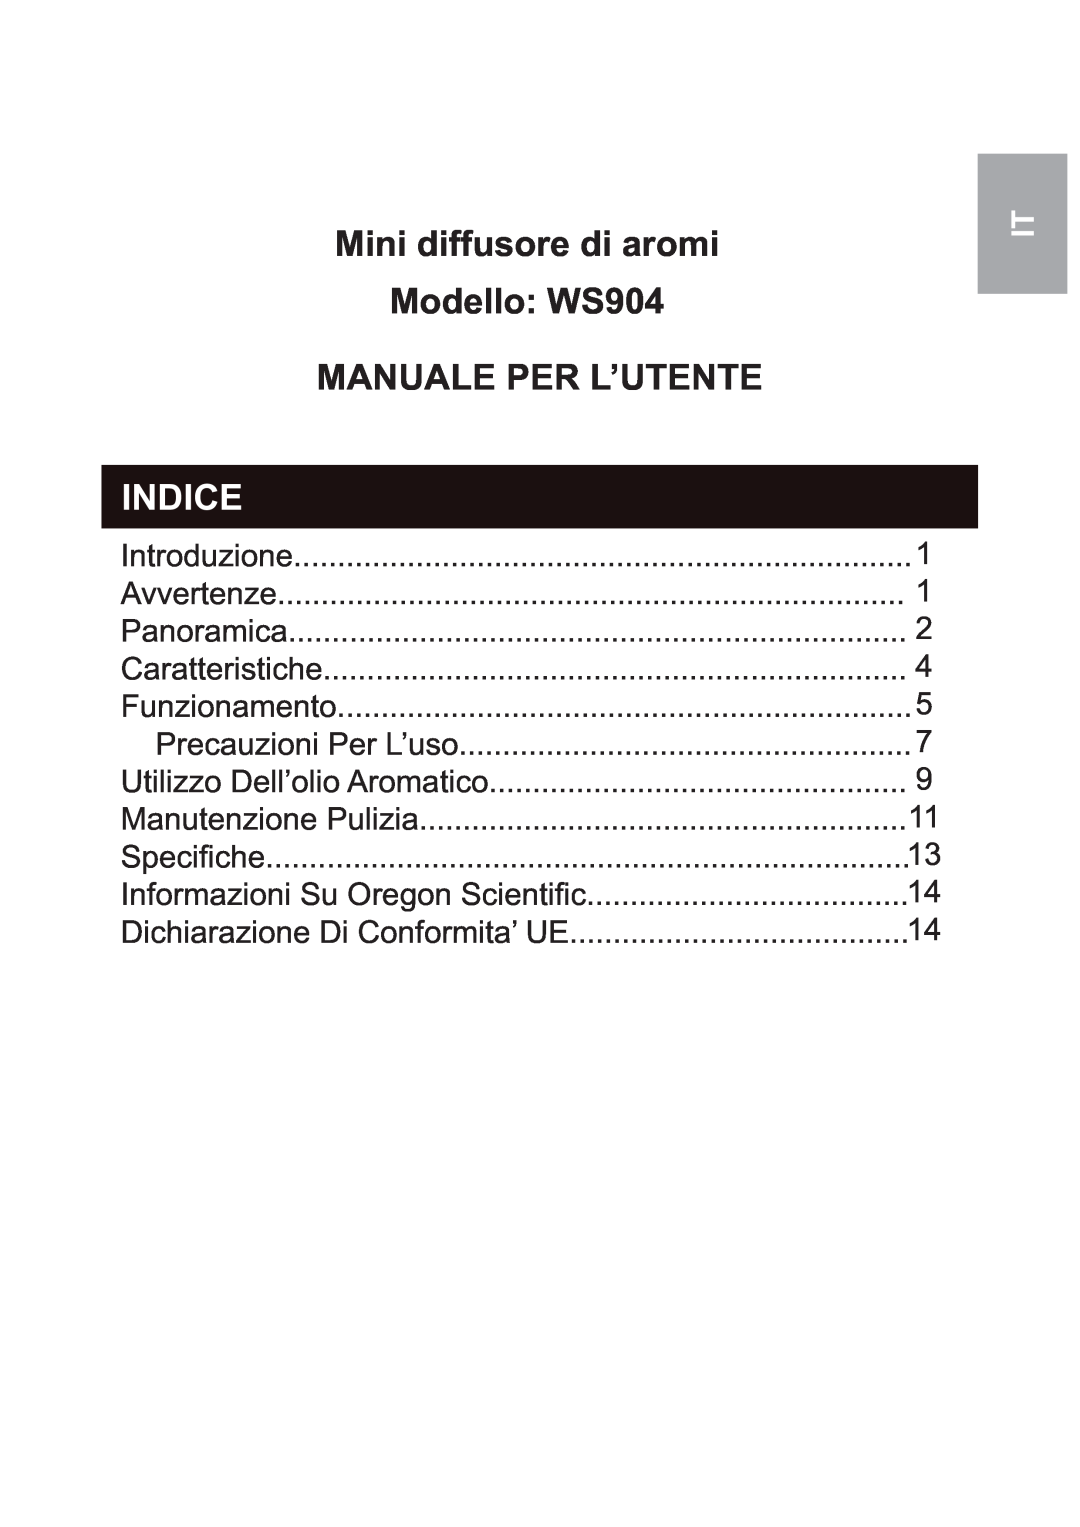 Oregon Scientific user manual Mini diffusore di aromi Modello: WS904, Manuale Per L’Utente, Indice 